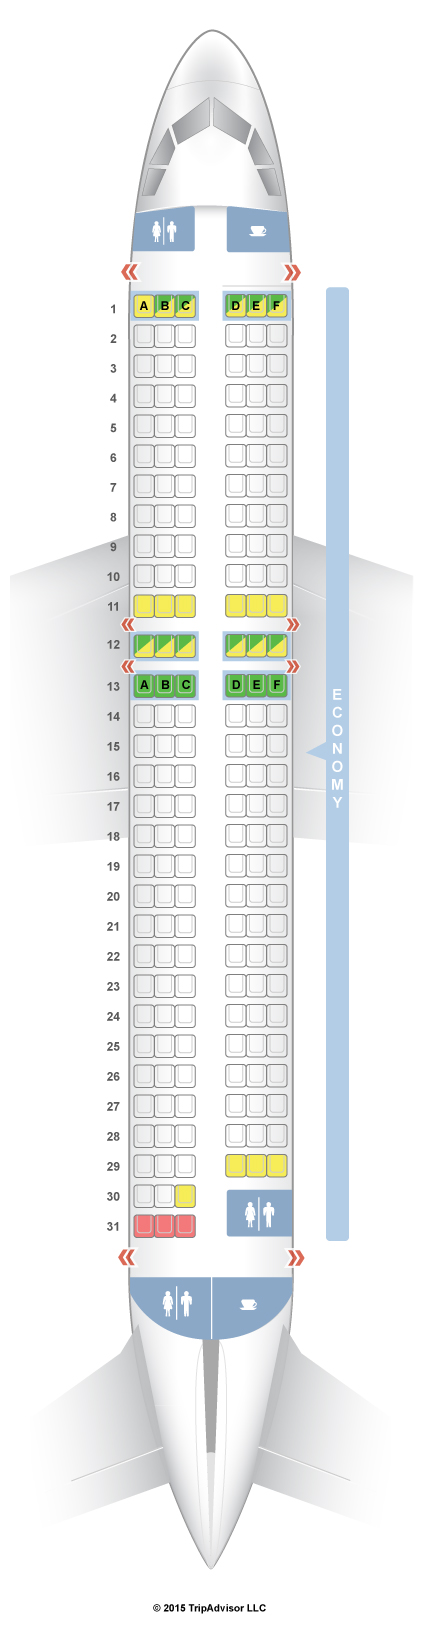 easyjet seating plan